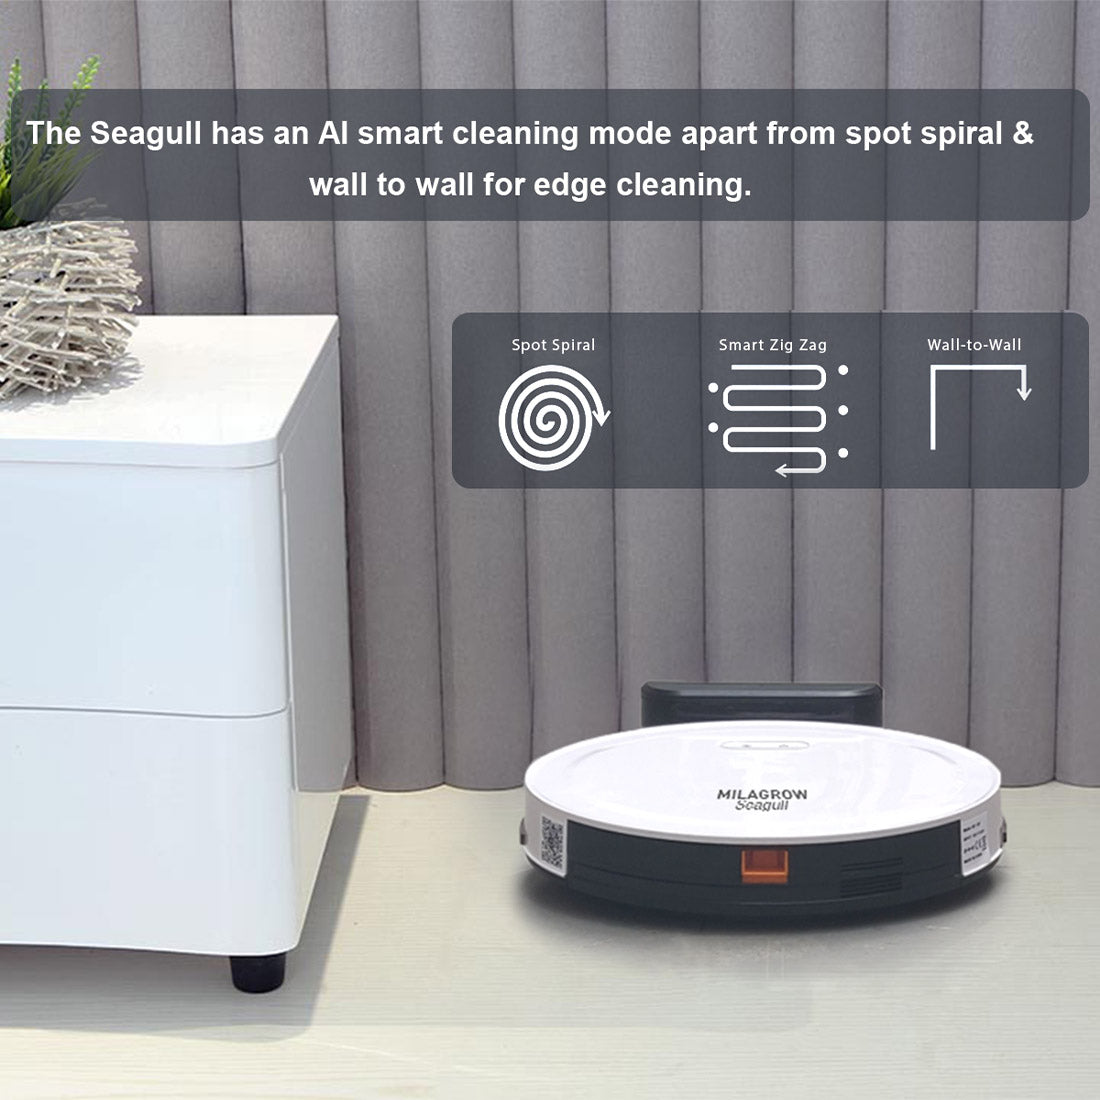 मिलाग्रो सीगल जॉय फुल ड्राई एंड स्लाइट वेट मॉपिंग रोबोटिक वैक्यूम क्लीनर शेड्यूलिंग और सेल्फ-चार्जिंग के साथ